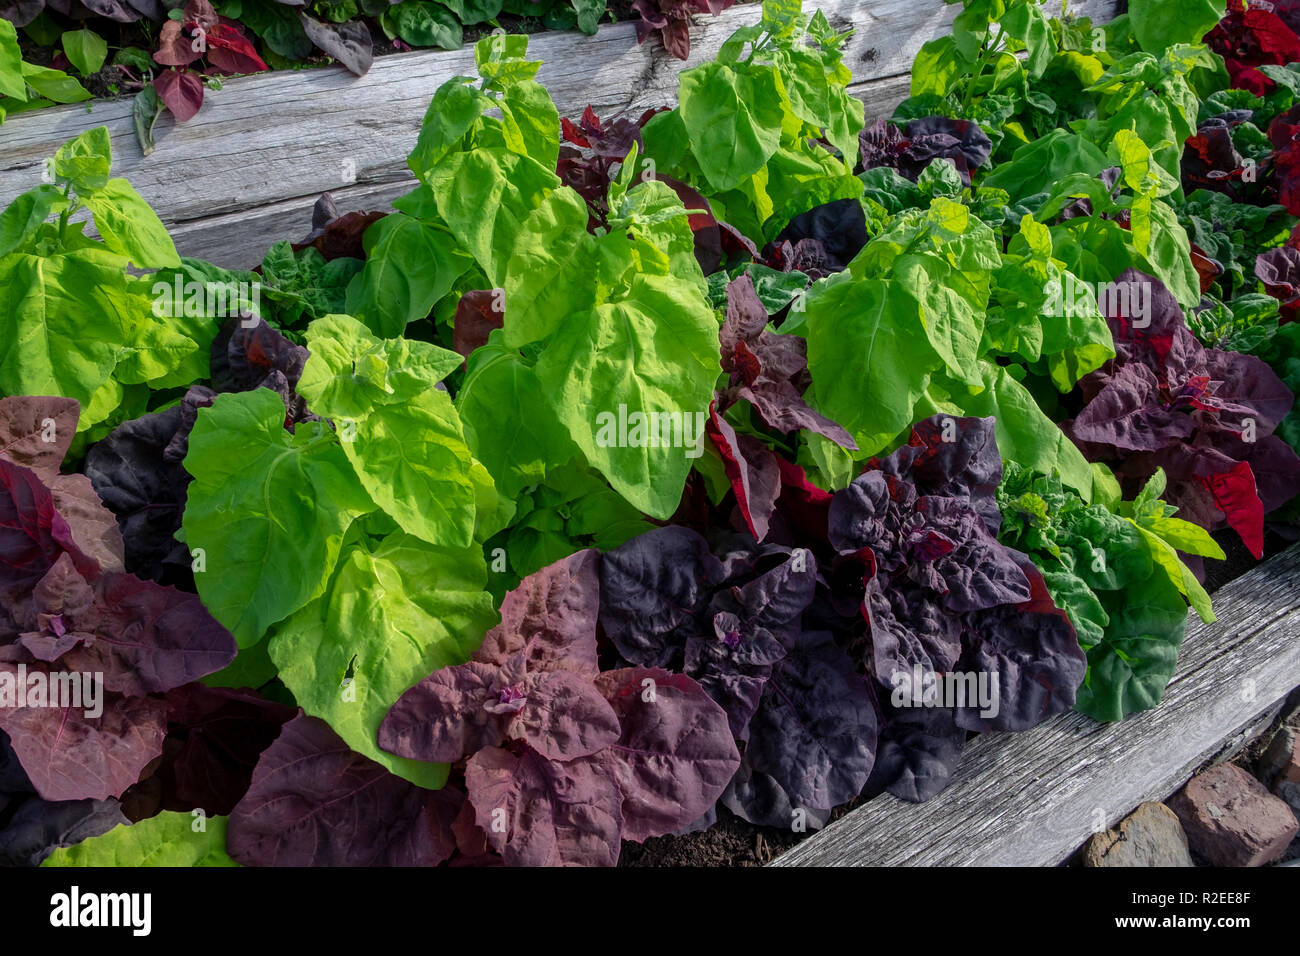 Grün und Rot, orach atripex Hortensis, eine Vielzahl von Saltbush im Zusammenhang mit Spinat einer kontrastierenden Farbe spritzen in den Gemüsegarten. Stockfoto